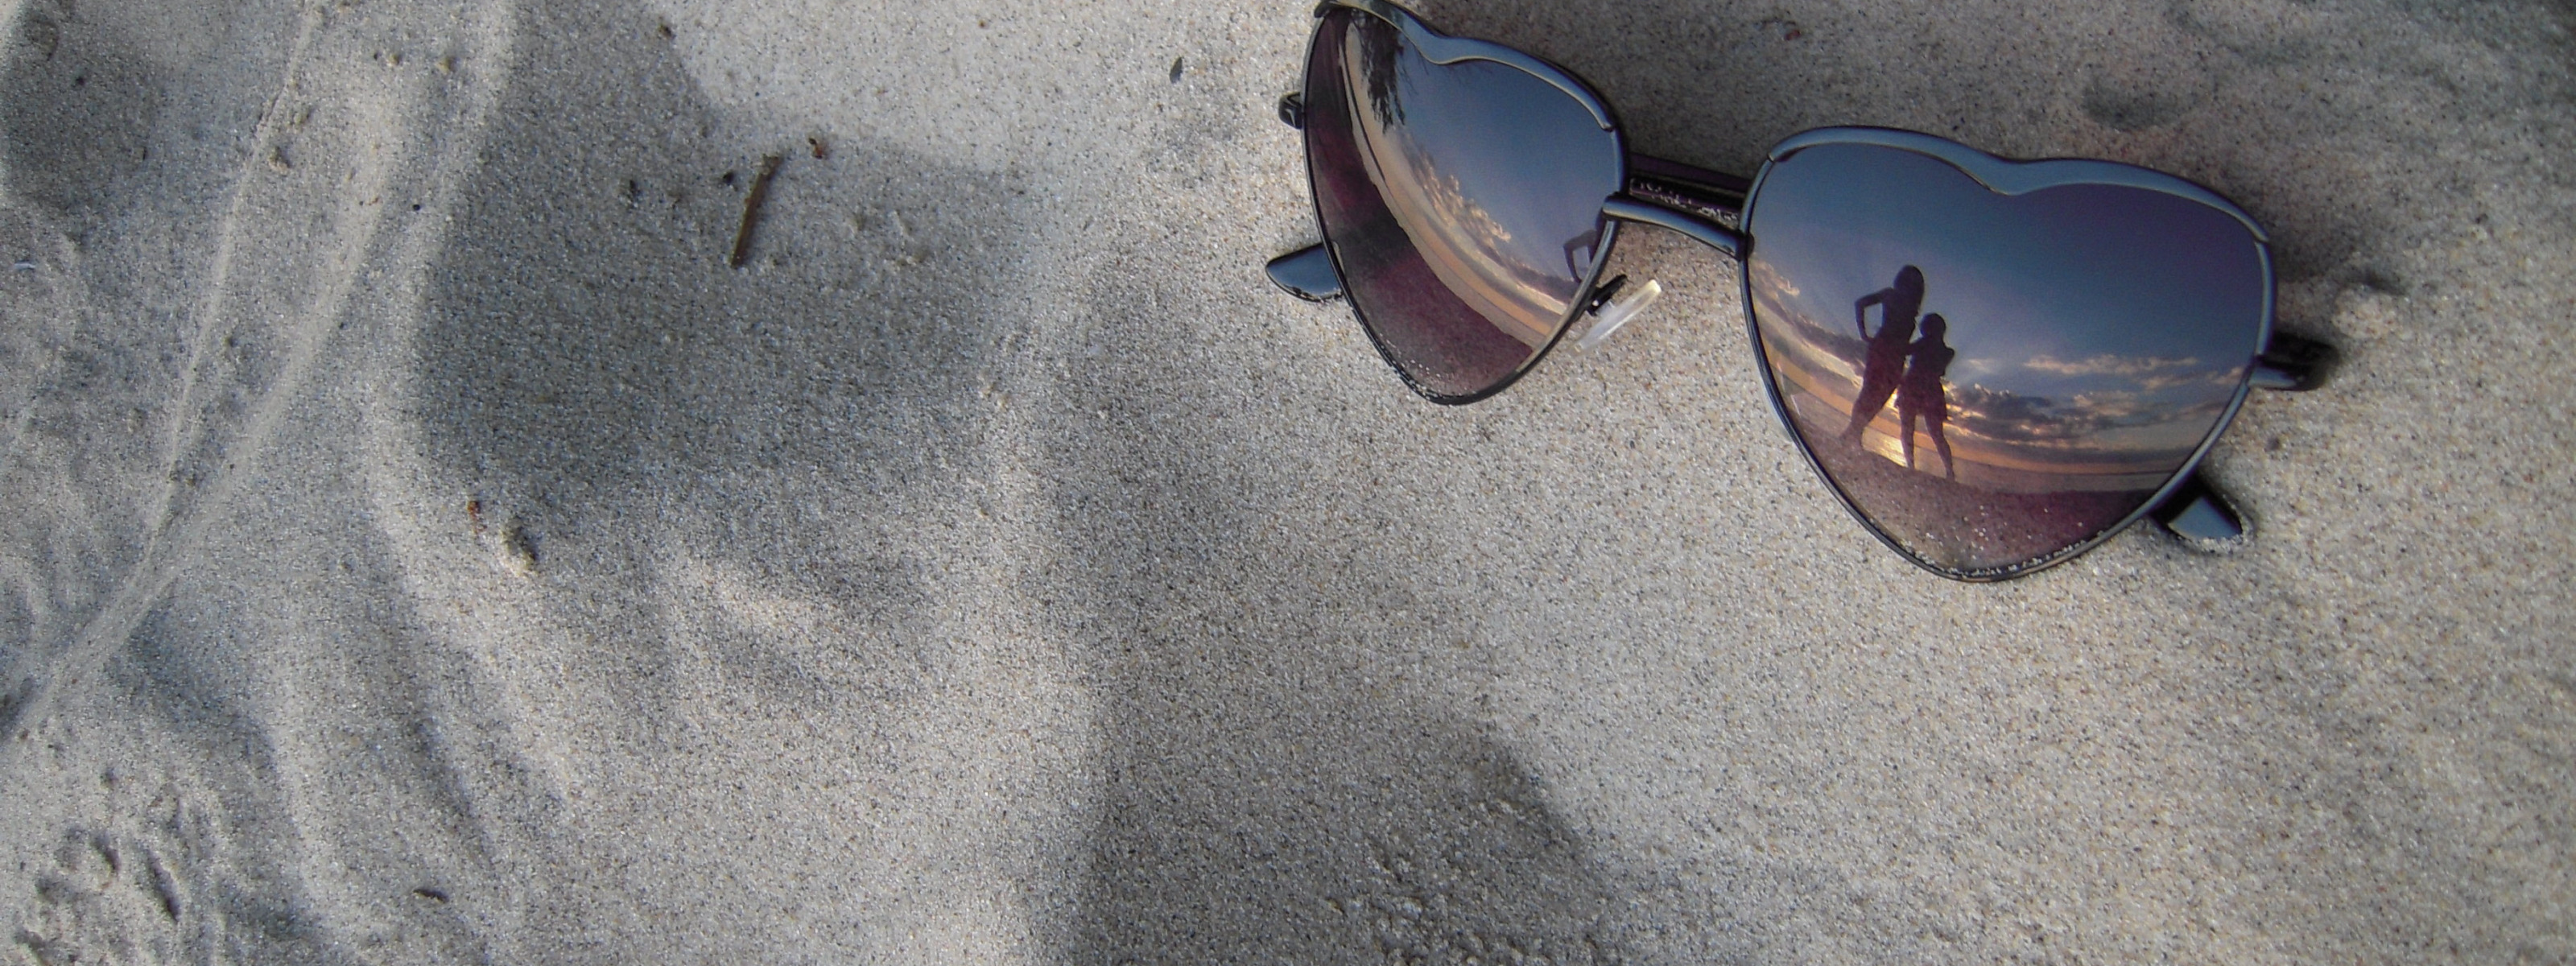 Разбитое очко. Солнечные очки на песке. Сломанные солнечные очки. В очках отражается море. Разбитые очки.